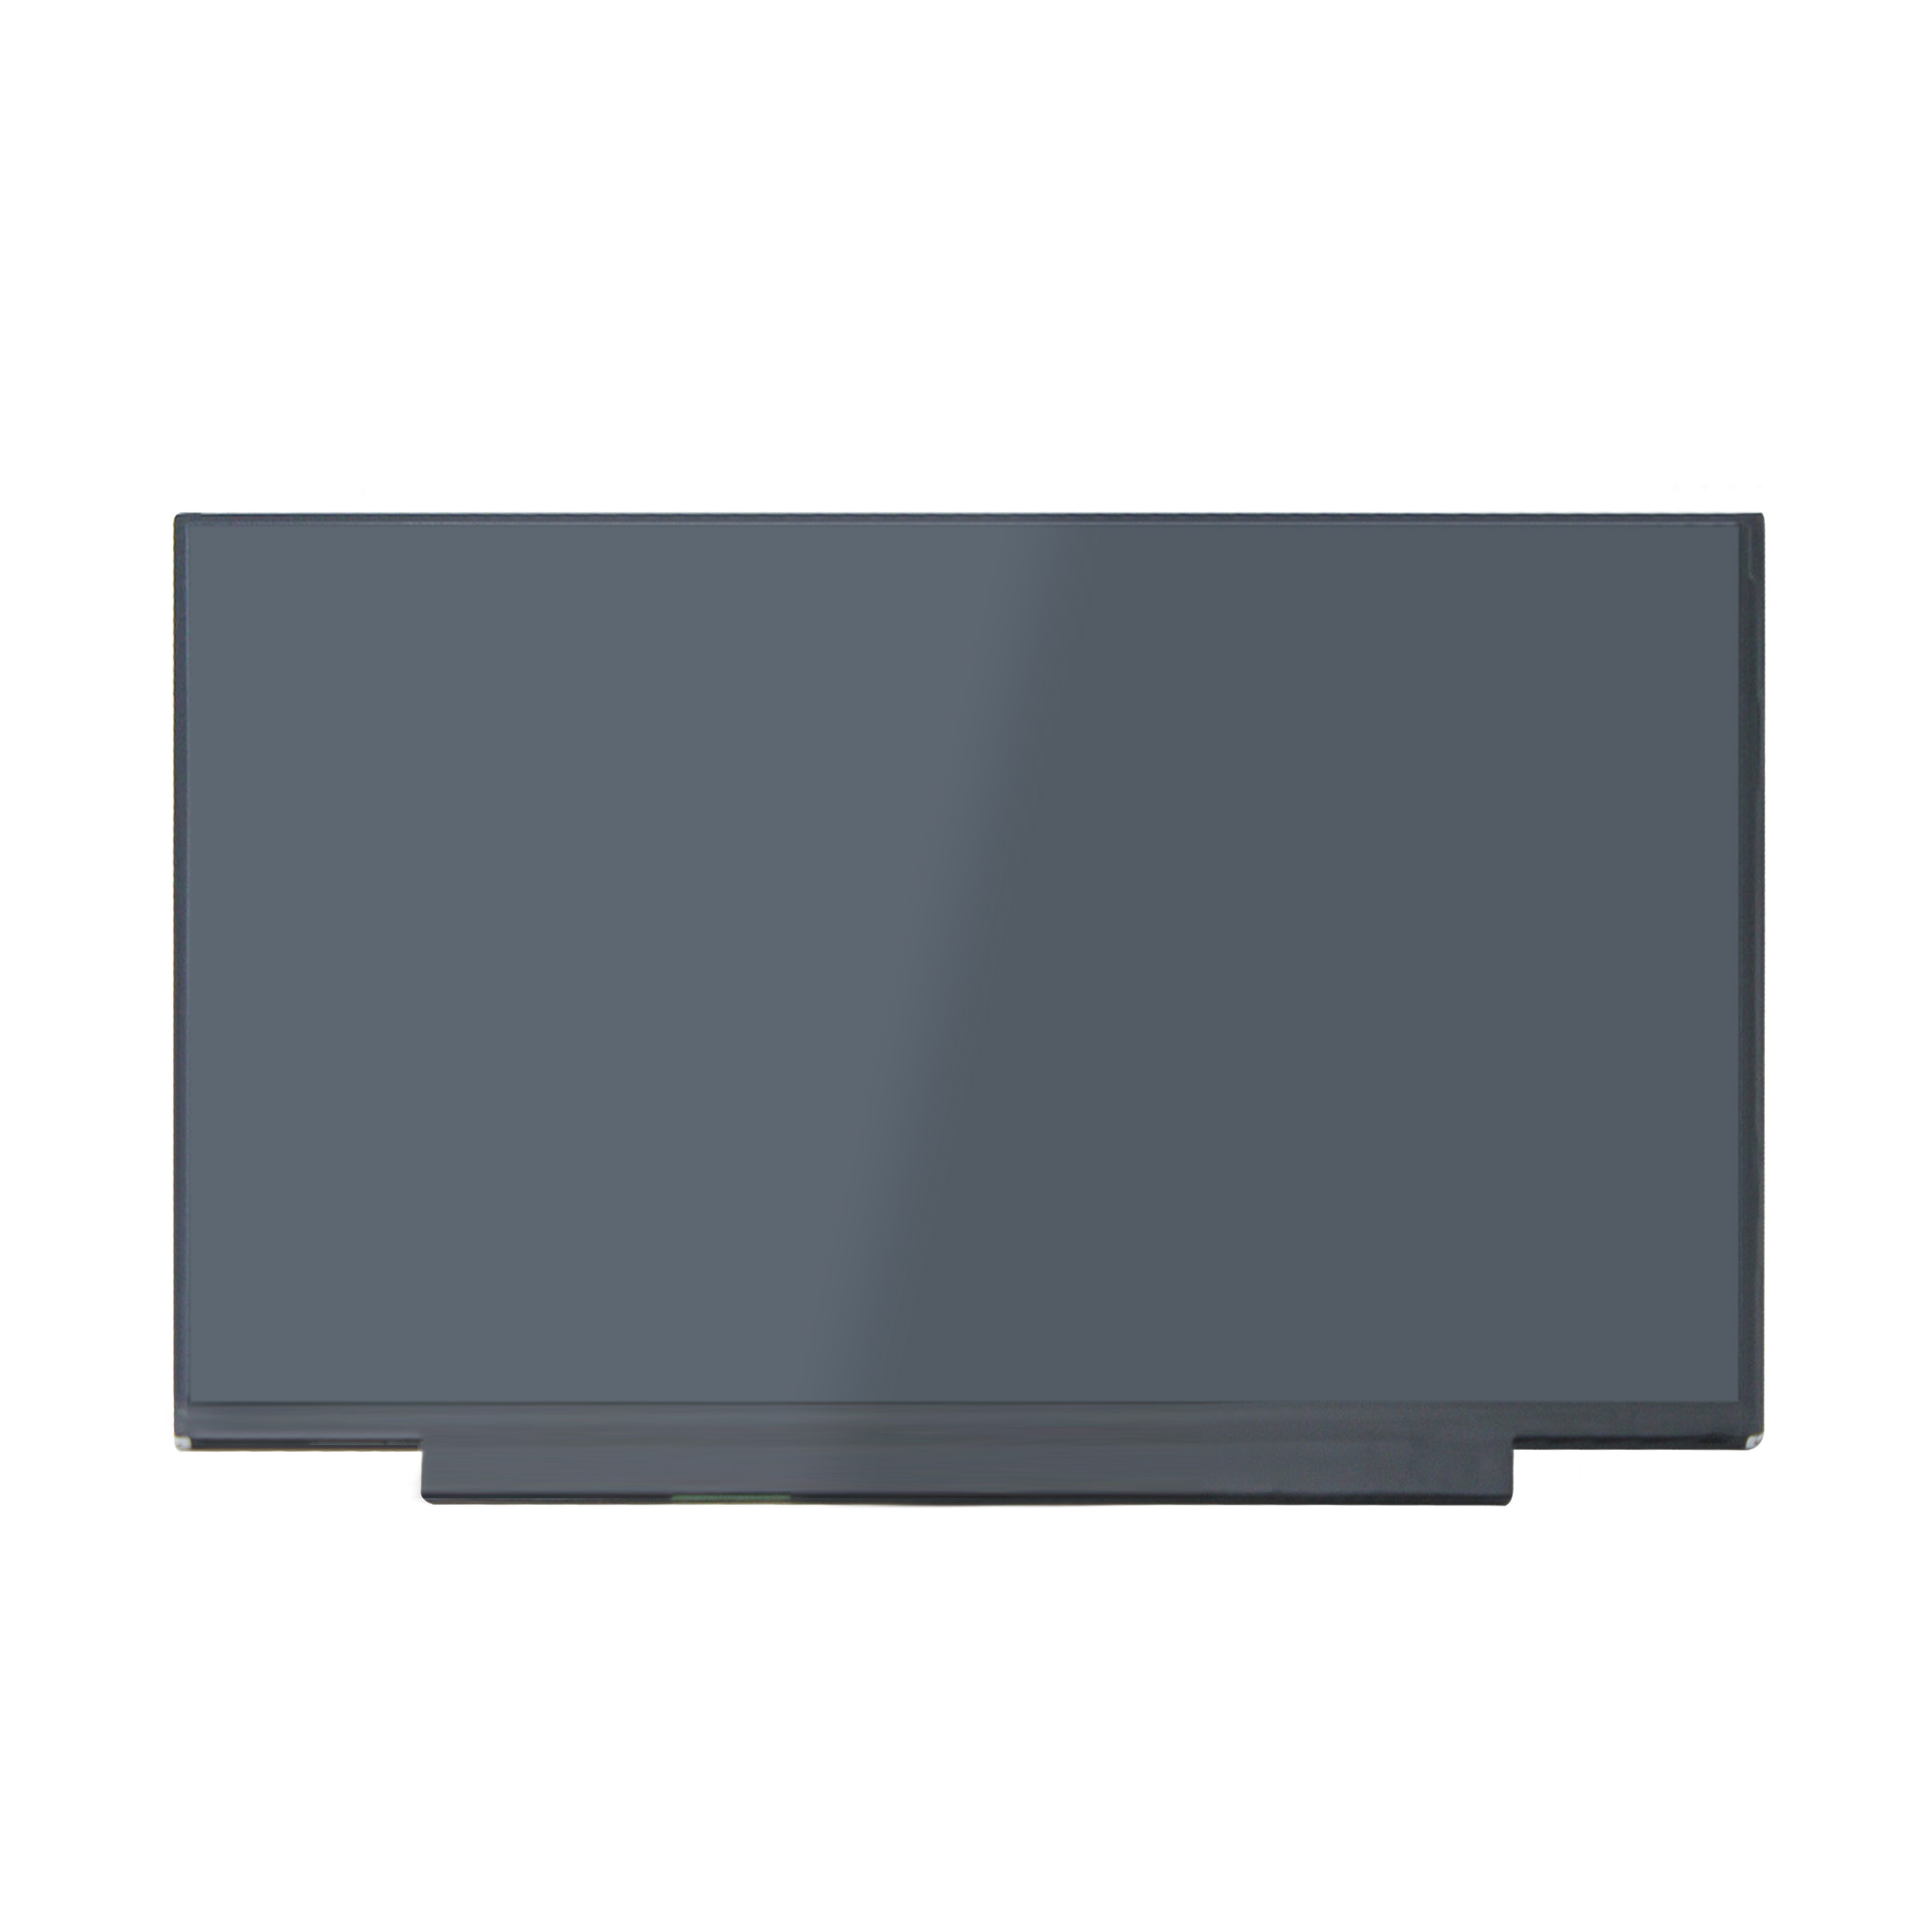 Yoothi 互換品 液晶 15.6インチ M156NWF7 R3 IVO061F 対応 100% sRGB 60Hz 30ピン 1920x1080 FullHD IPS LED LCD 液晶ディスプレイ 修理交換用液晶パネル